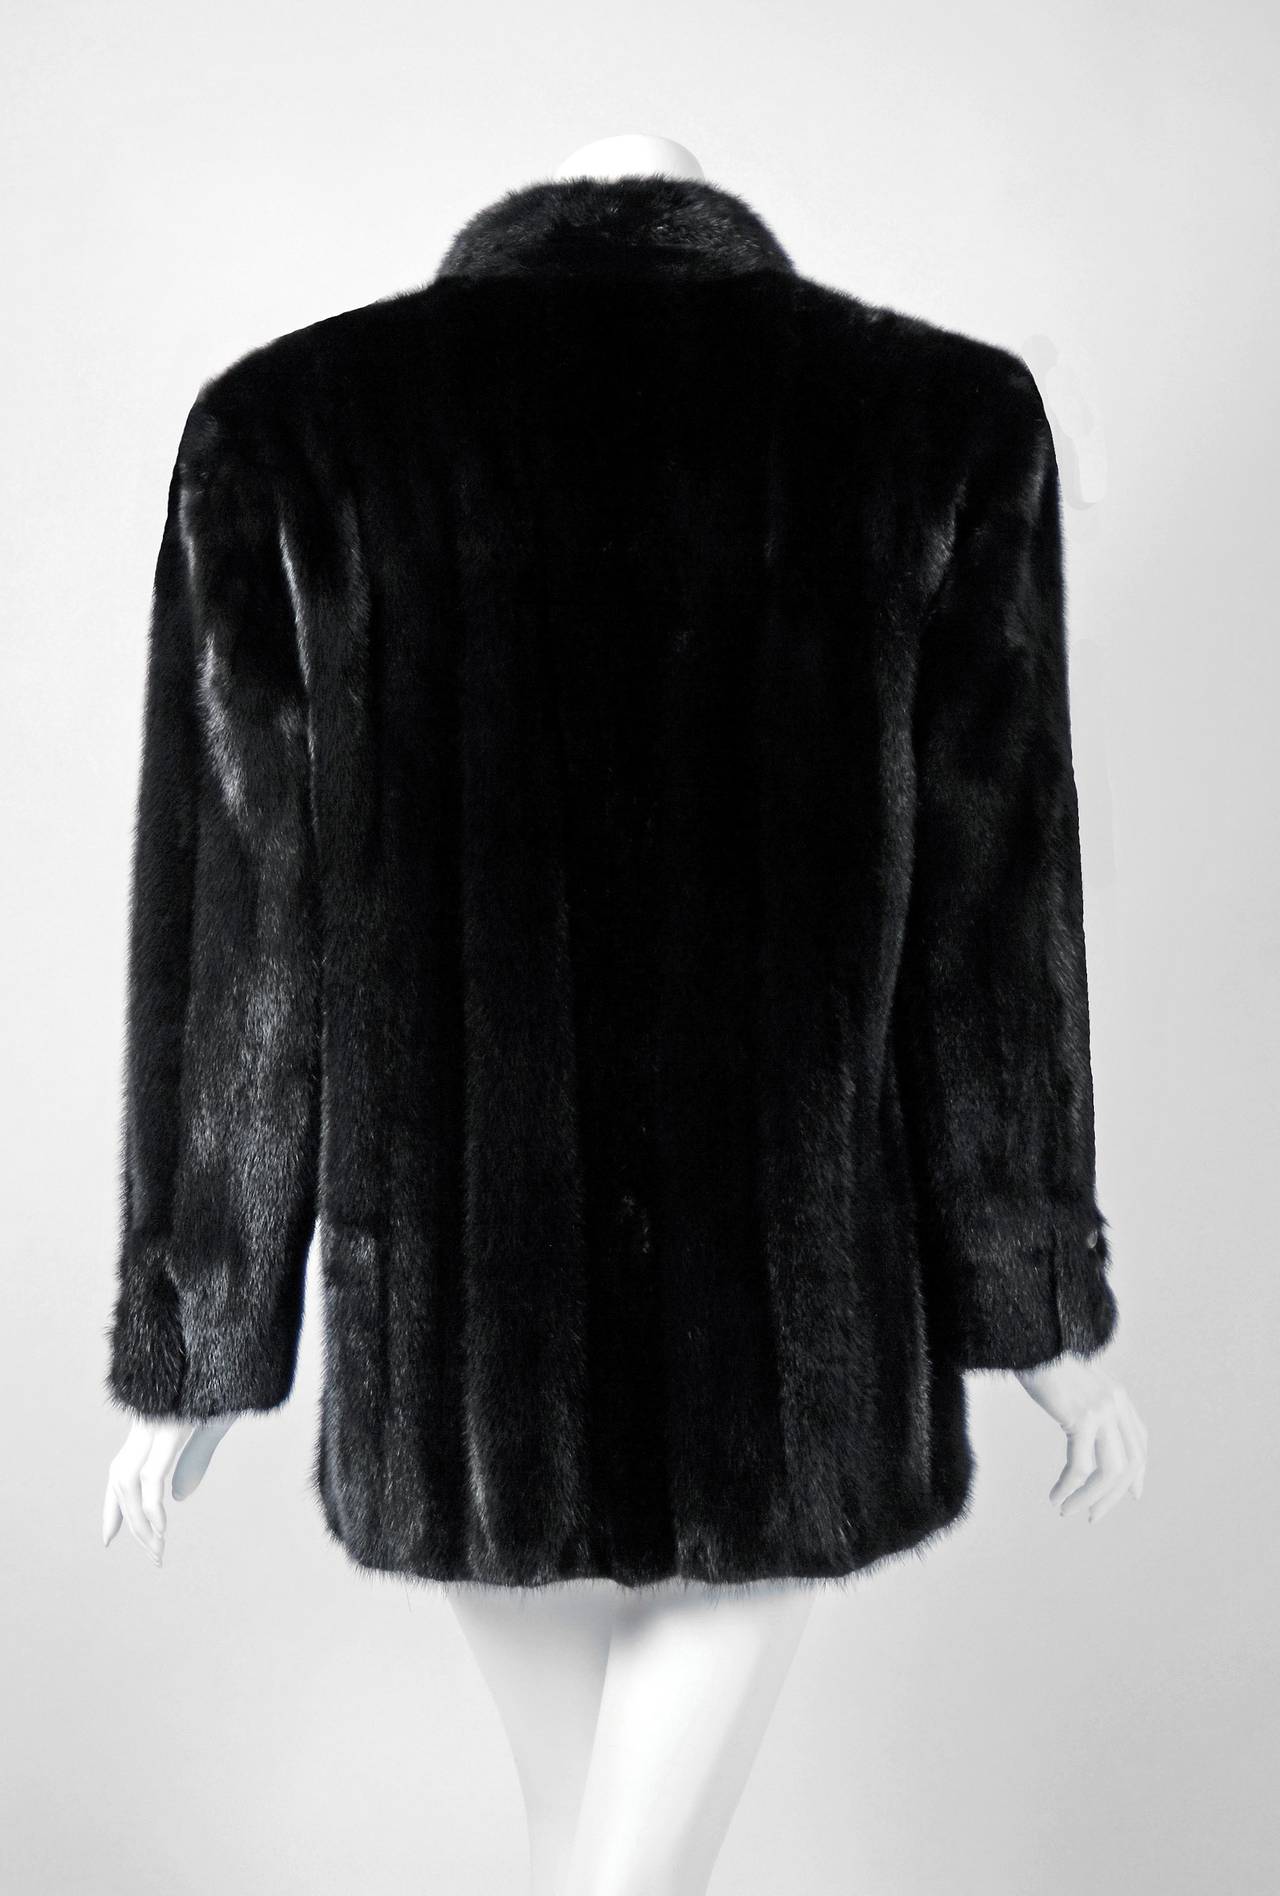 Women's 1990's Ralph Lauren Deluxe Black Mink Fur Double-Breasted Cropped Coat Jacket